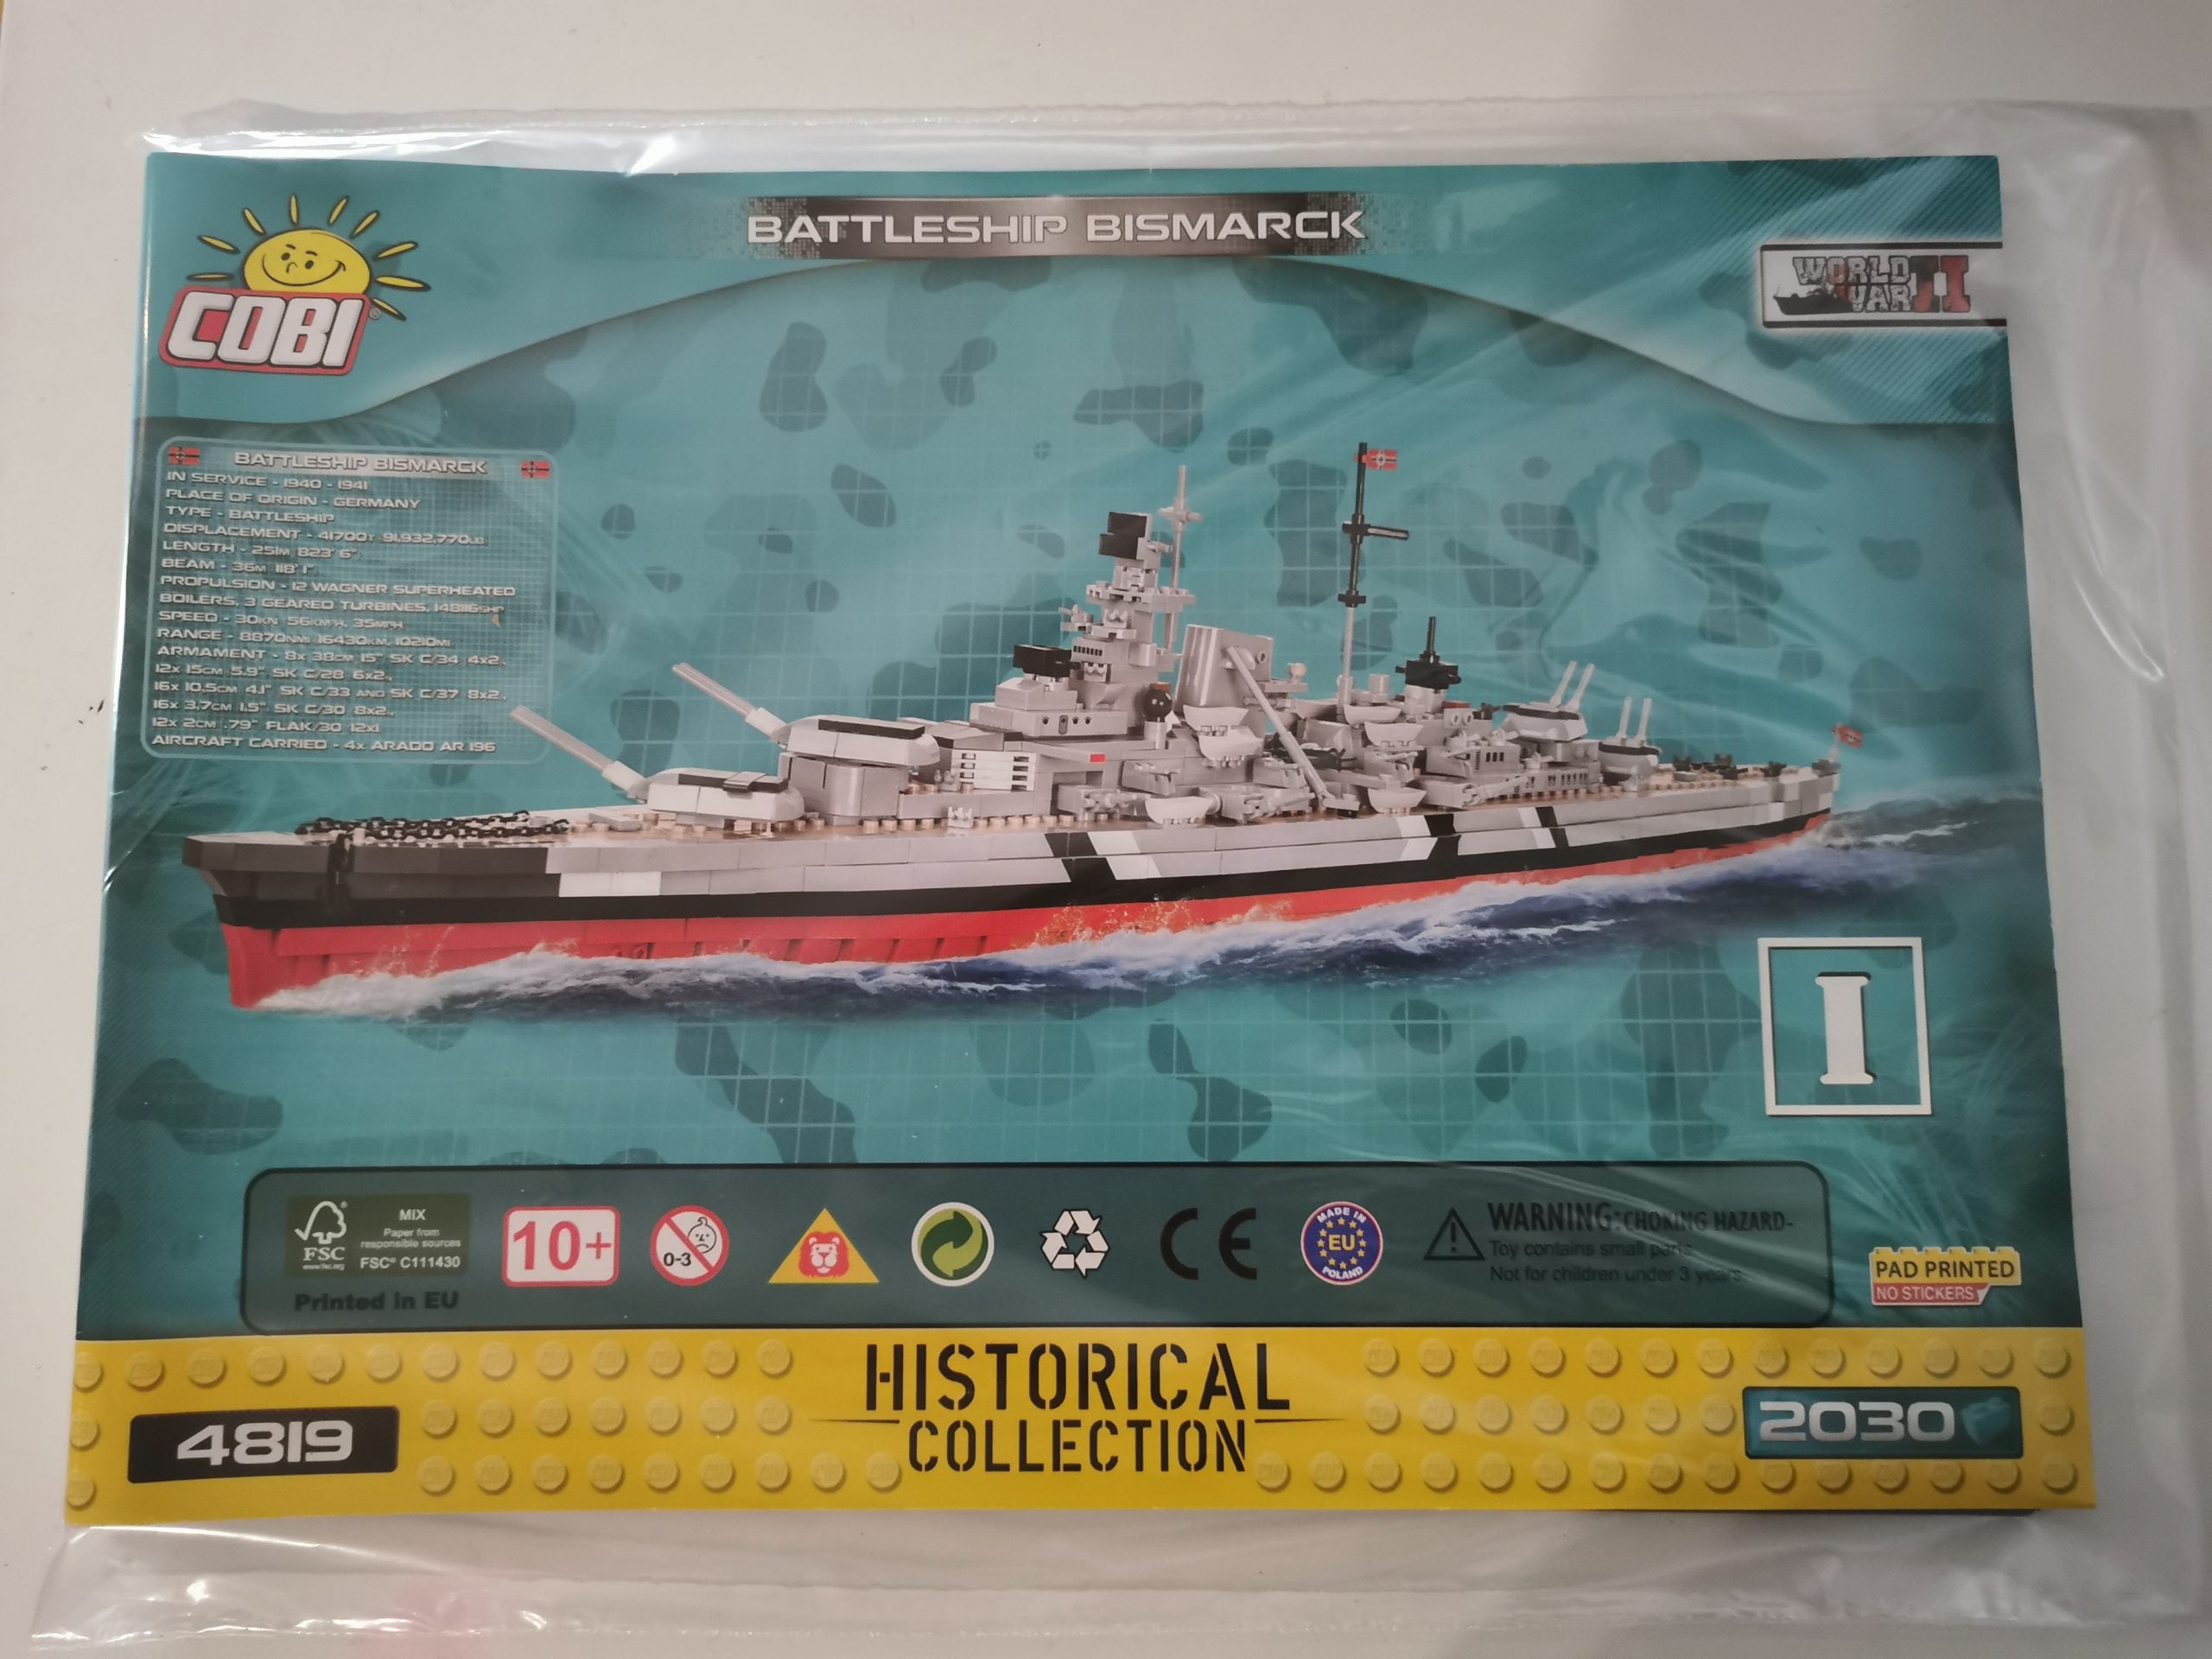 Cobi 4819 Battleship Bismarck used